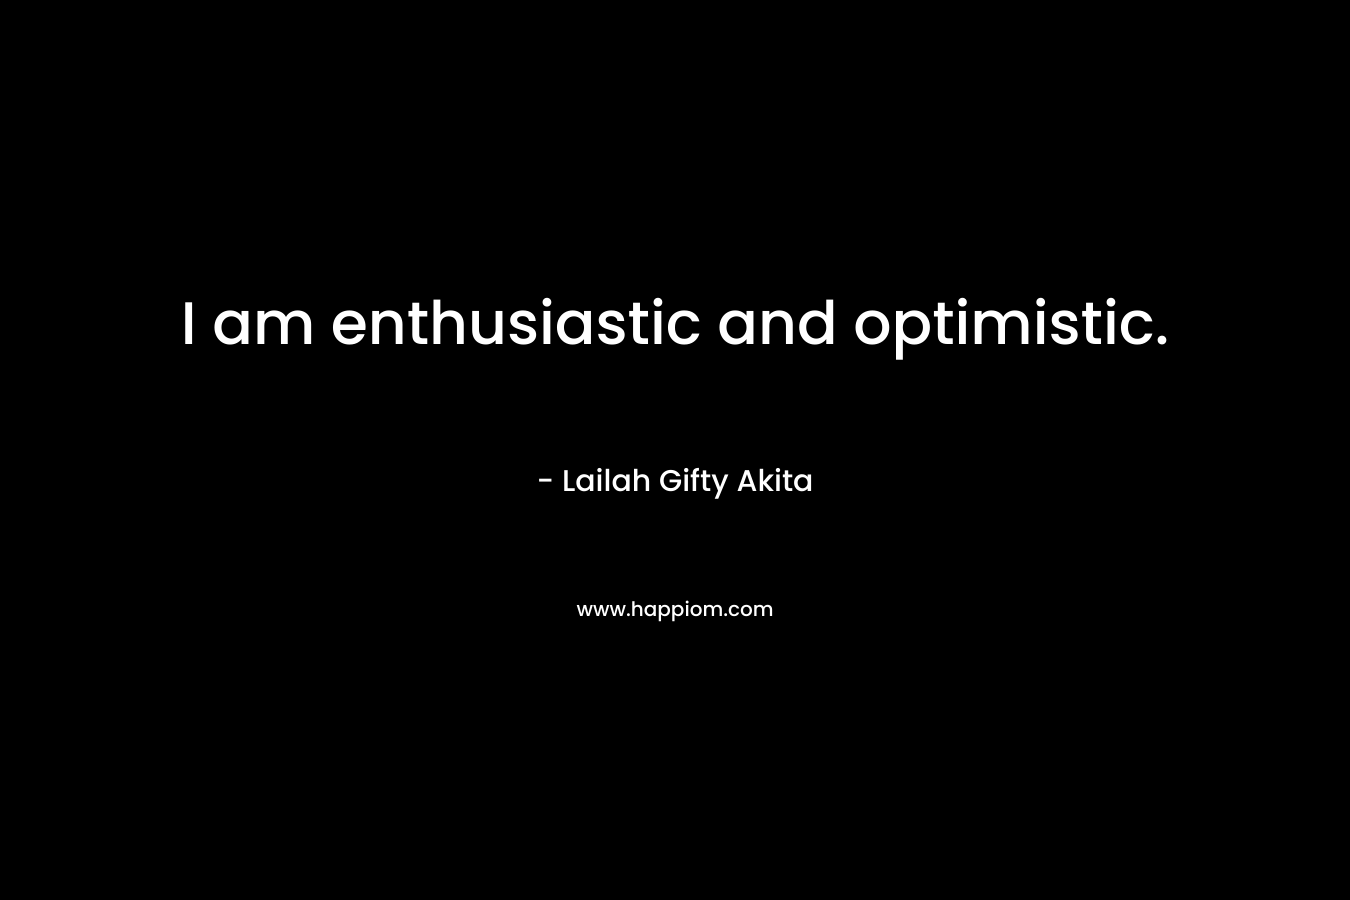 I am enthusiastic and optimistic.